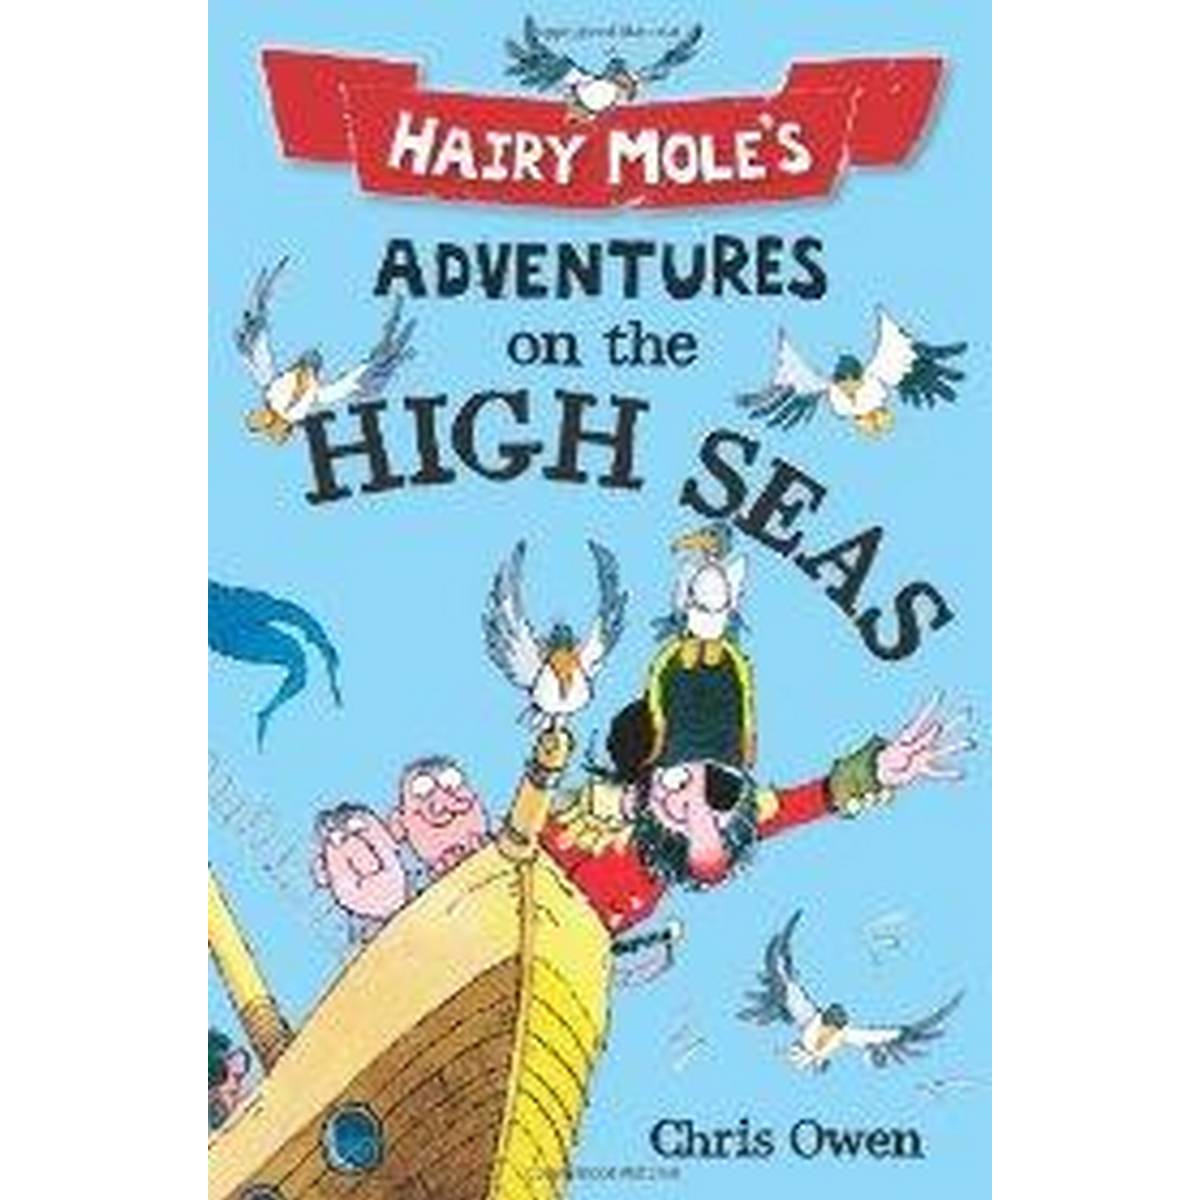 Hairy Mole's Adventures on the High Seas